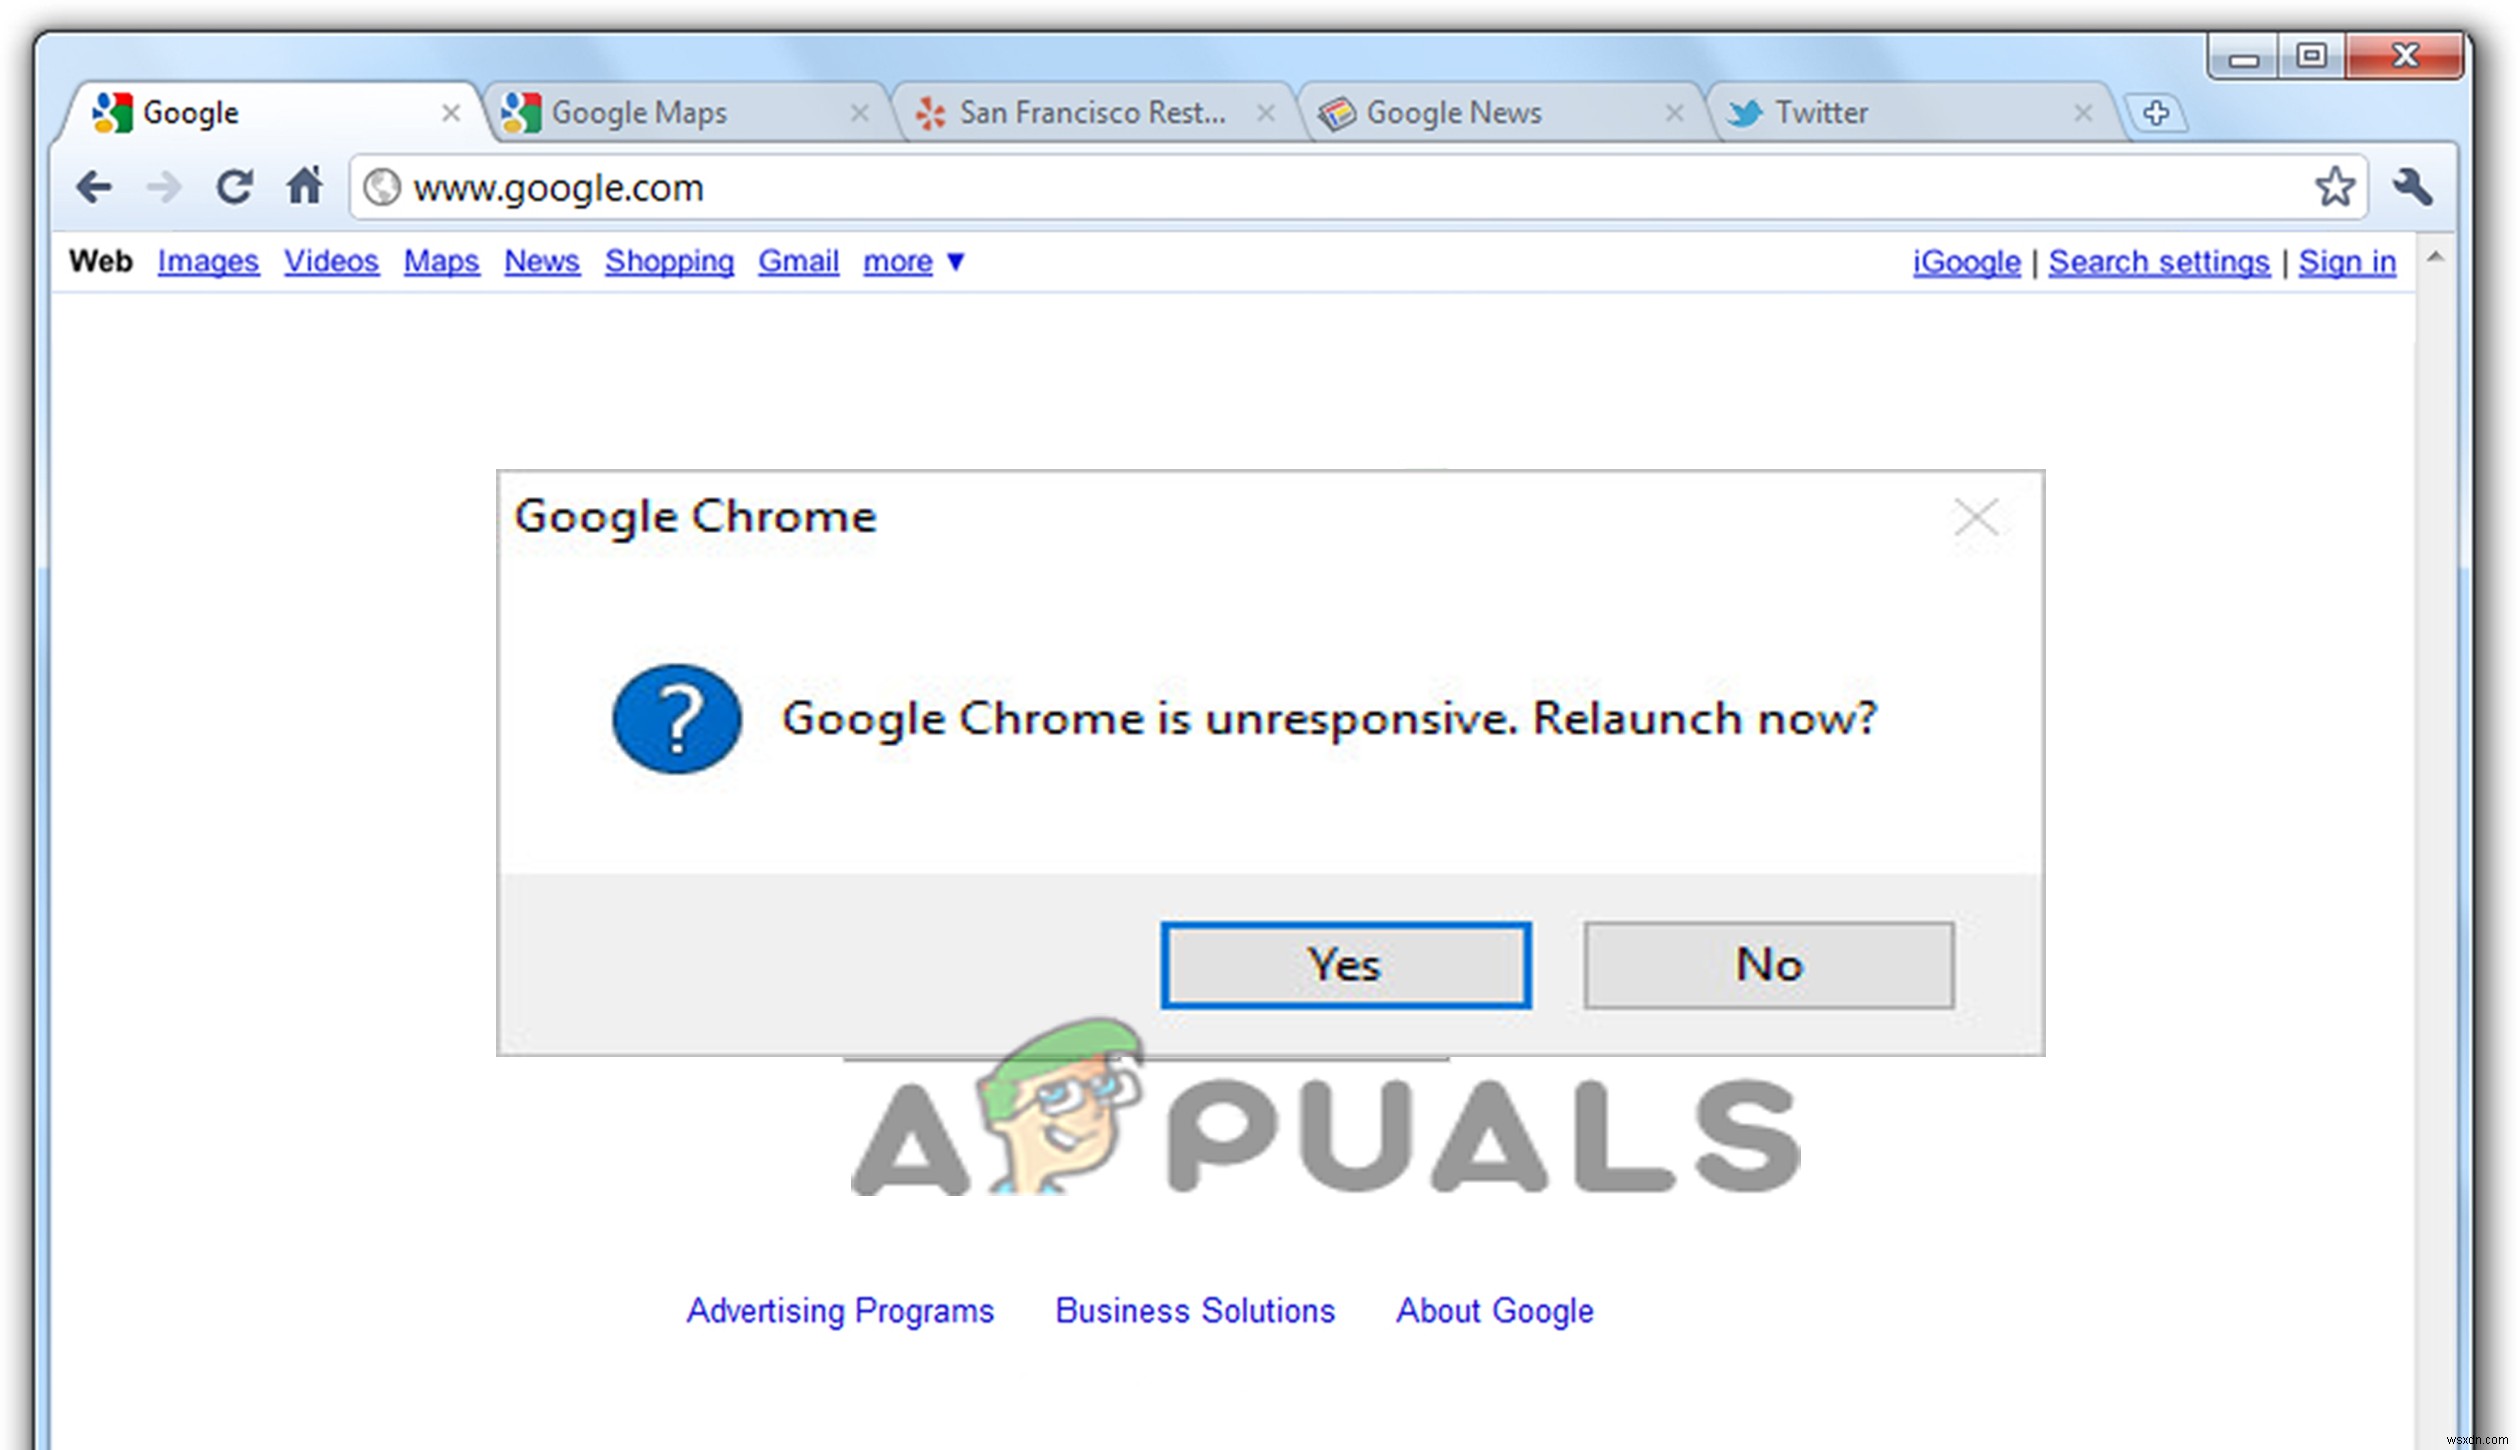  Chrome이 응답하지 않습니다  오류를 수정하는 방법은 무엇입니까?